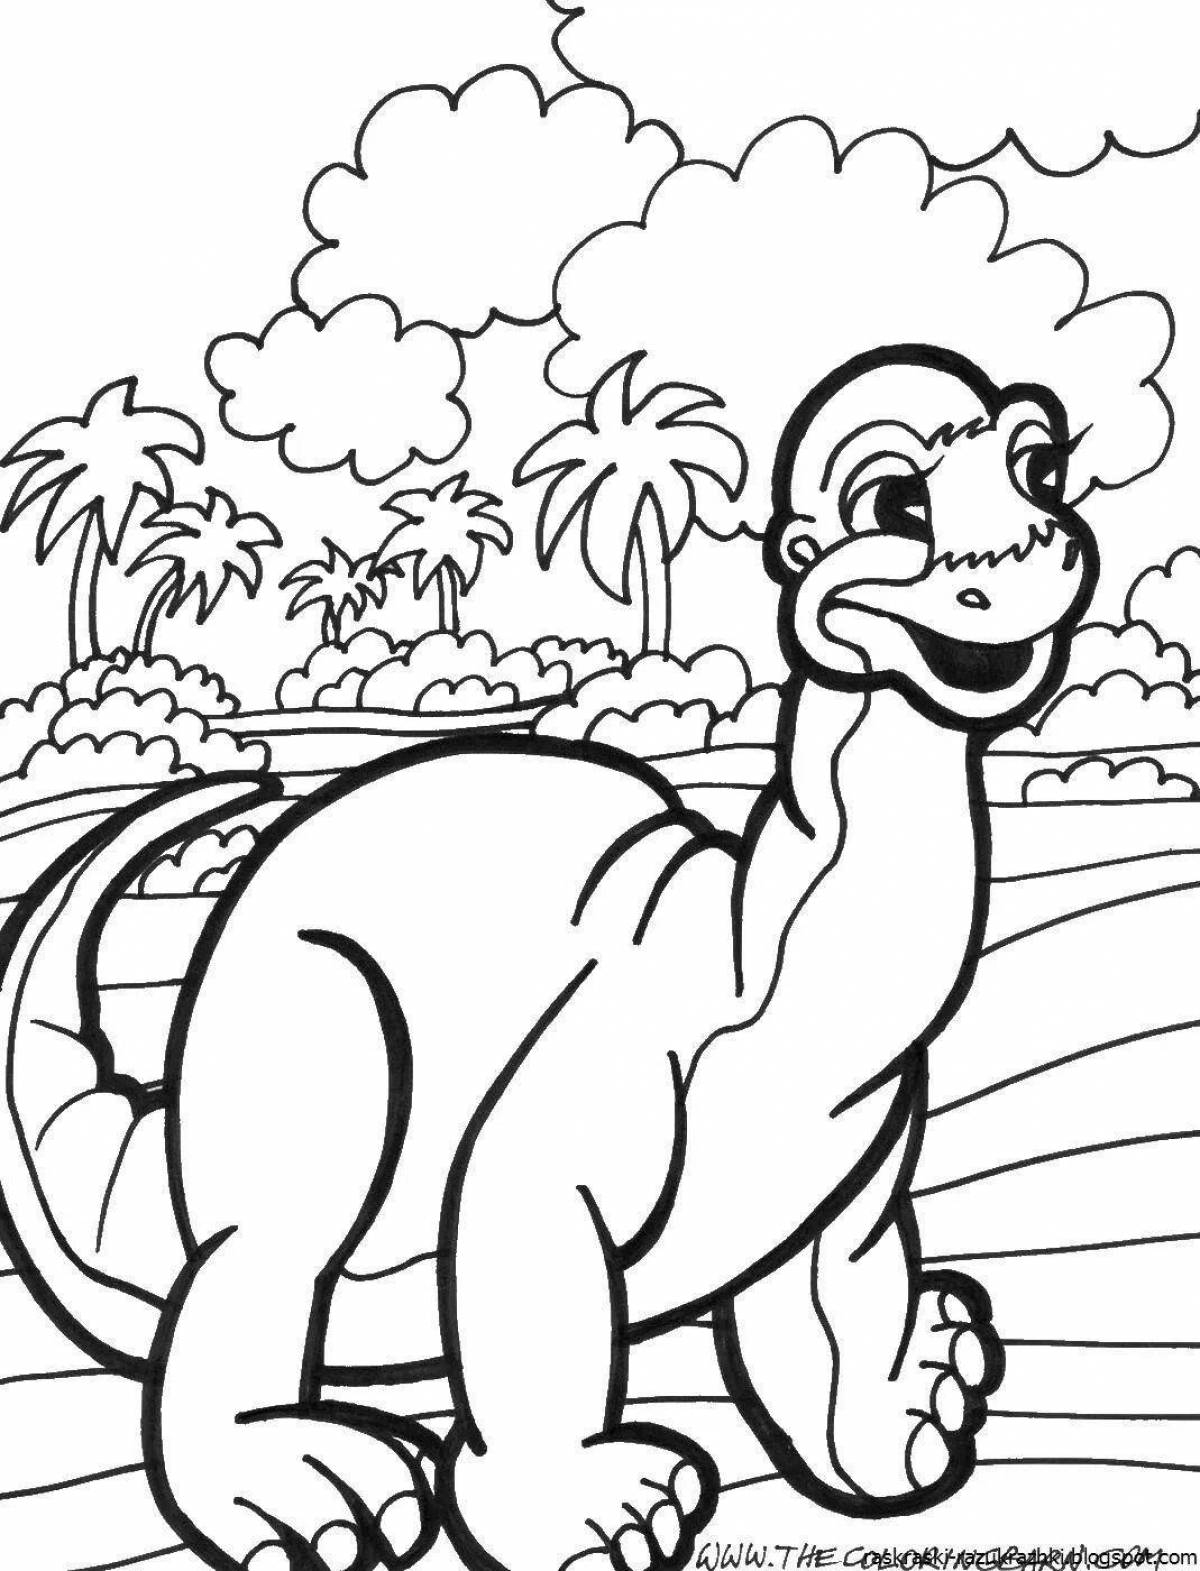 Юмористическая раскраска динозавров для детей 7 лет